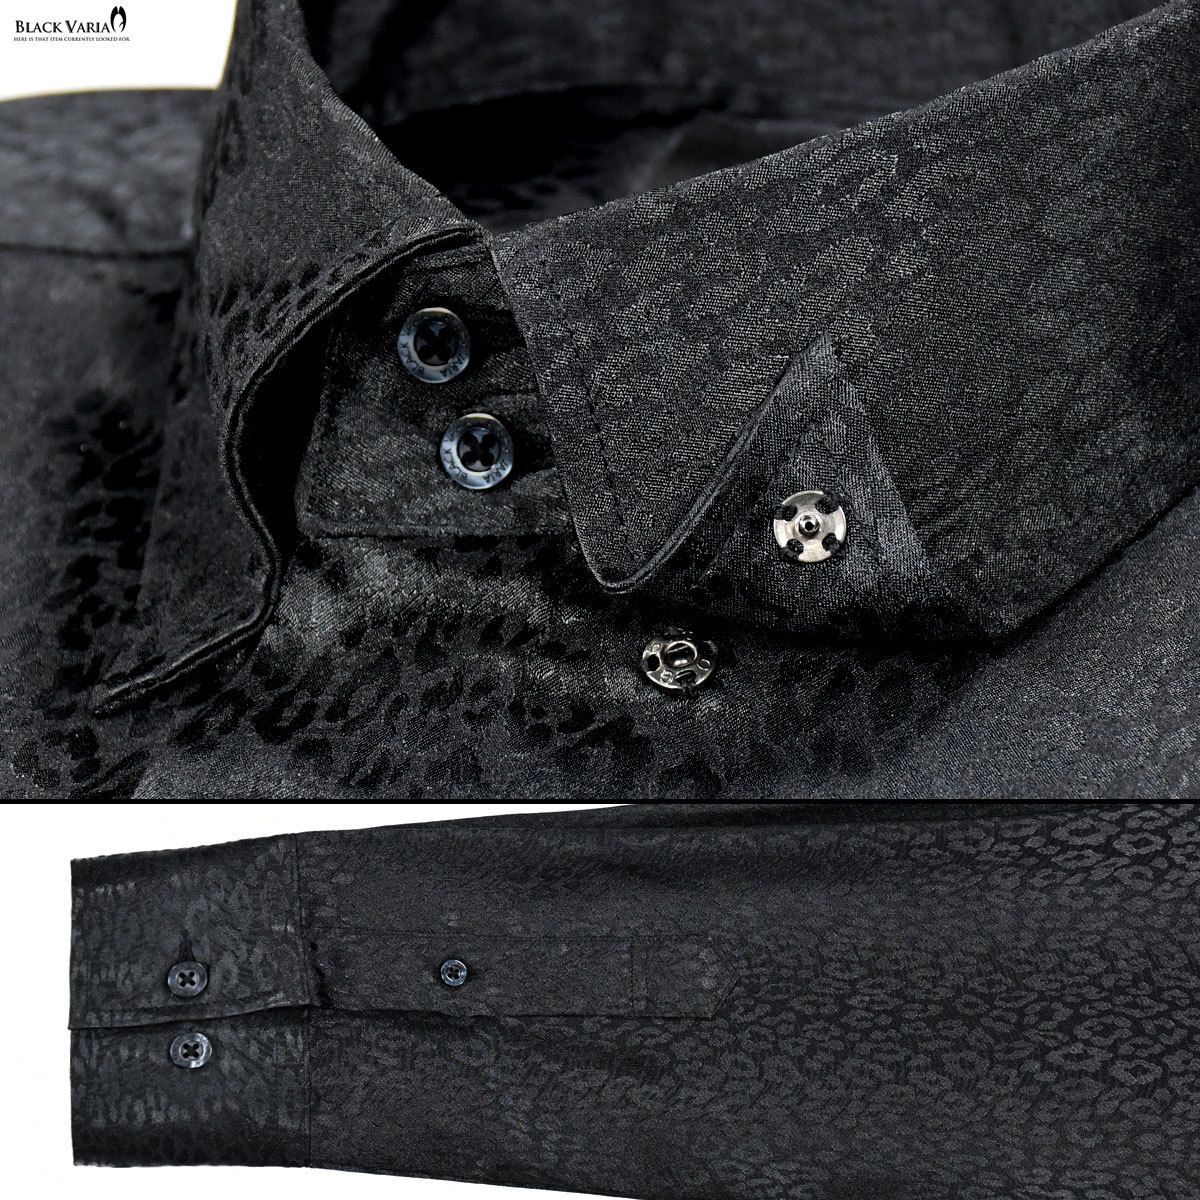 181710-bk BLACK VARIA ドゥエボットーニ ヒョウ柄 豹 ジャガード スナップダウン ドレスシャツ 日本製 メンズ(ブラック黒) L パーティー_画像5